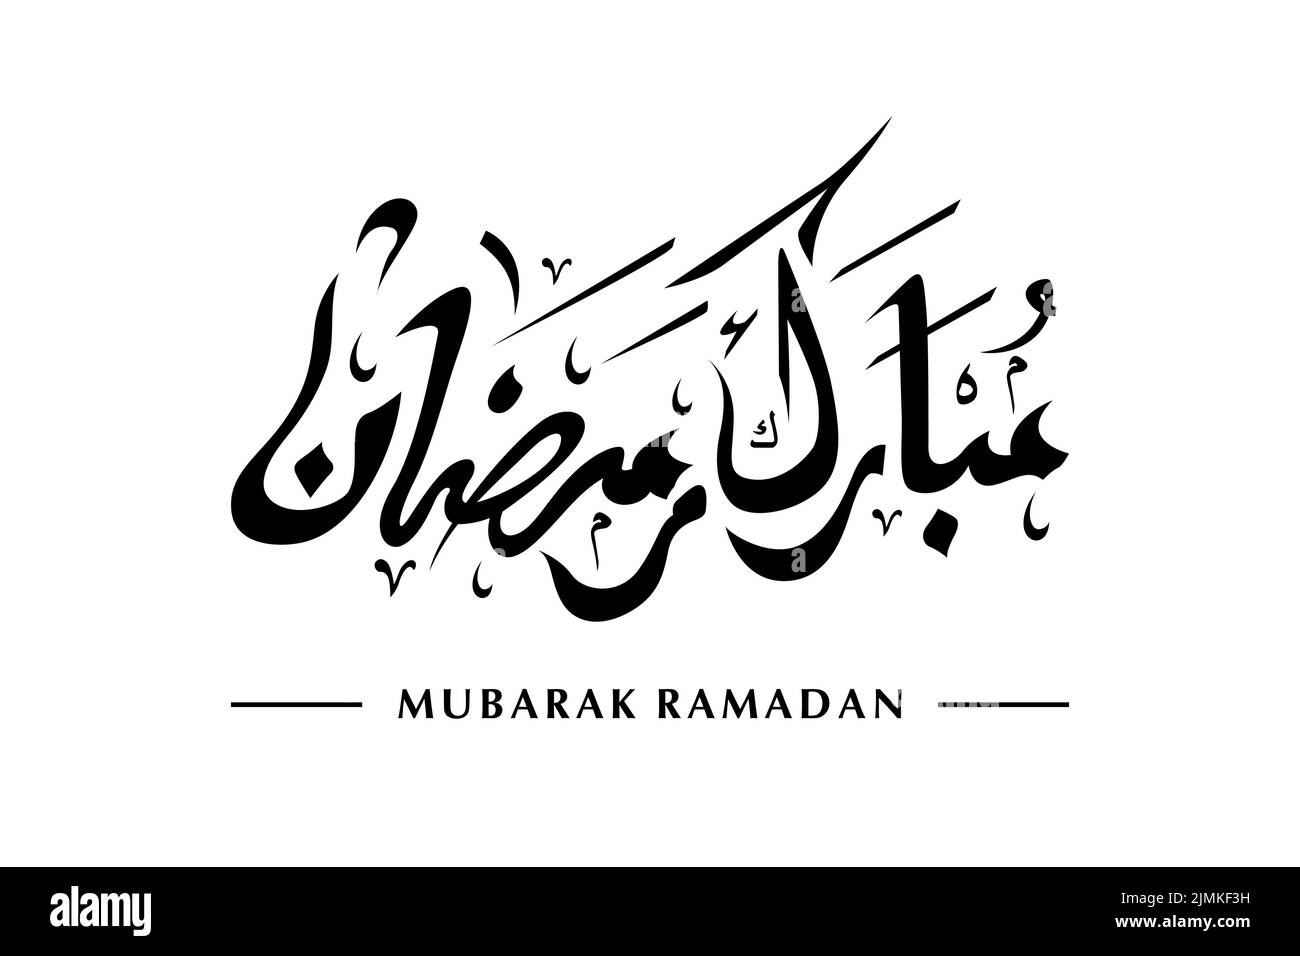 Mubarak Ramadan Writing Calligraphy Art Stock Vector